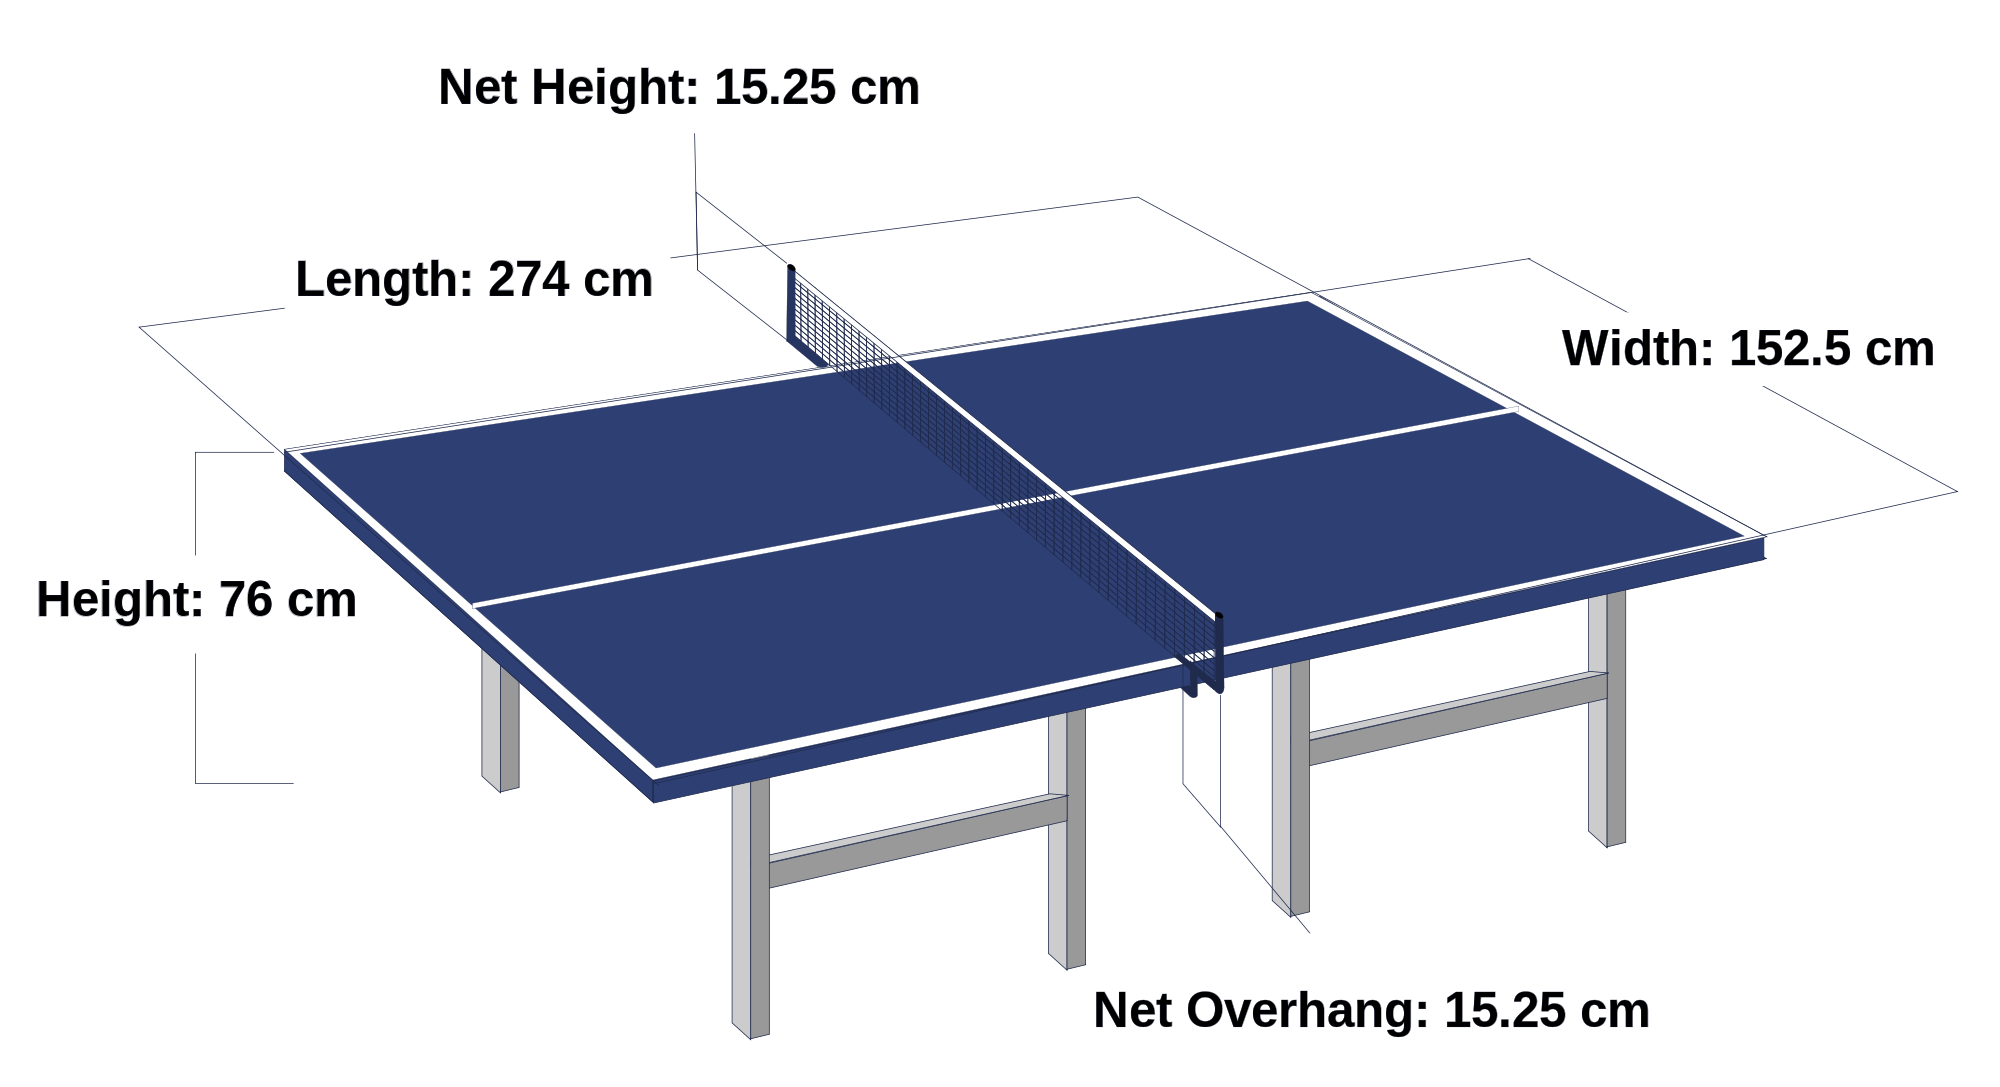 Размеры теннисного стола для настольного тенниса стандарт. Размеры настольного теннисного стола стандарт. Размер теннисного стола для настольного тенниса. Габариты теннисного стола.